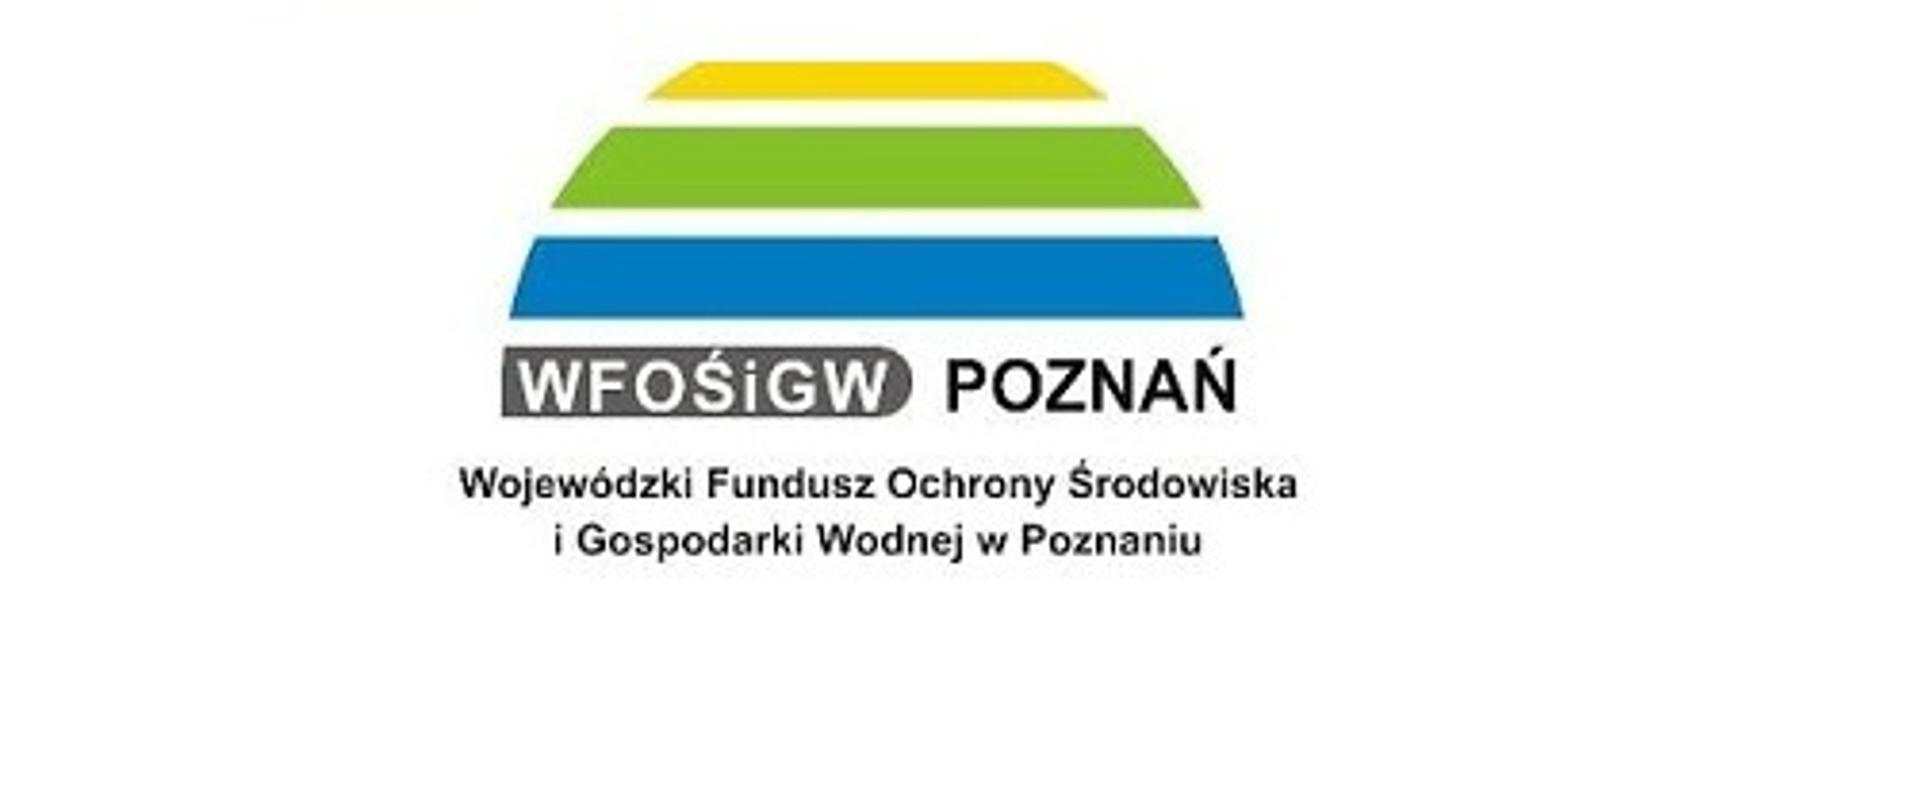 logo wfośigw